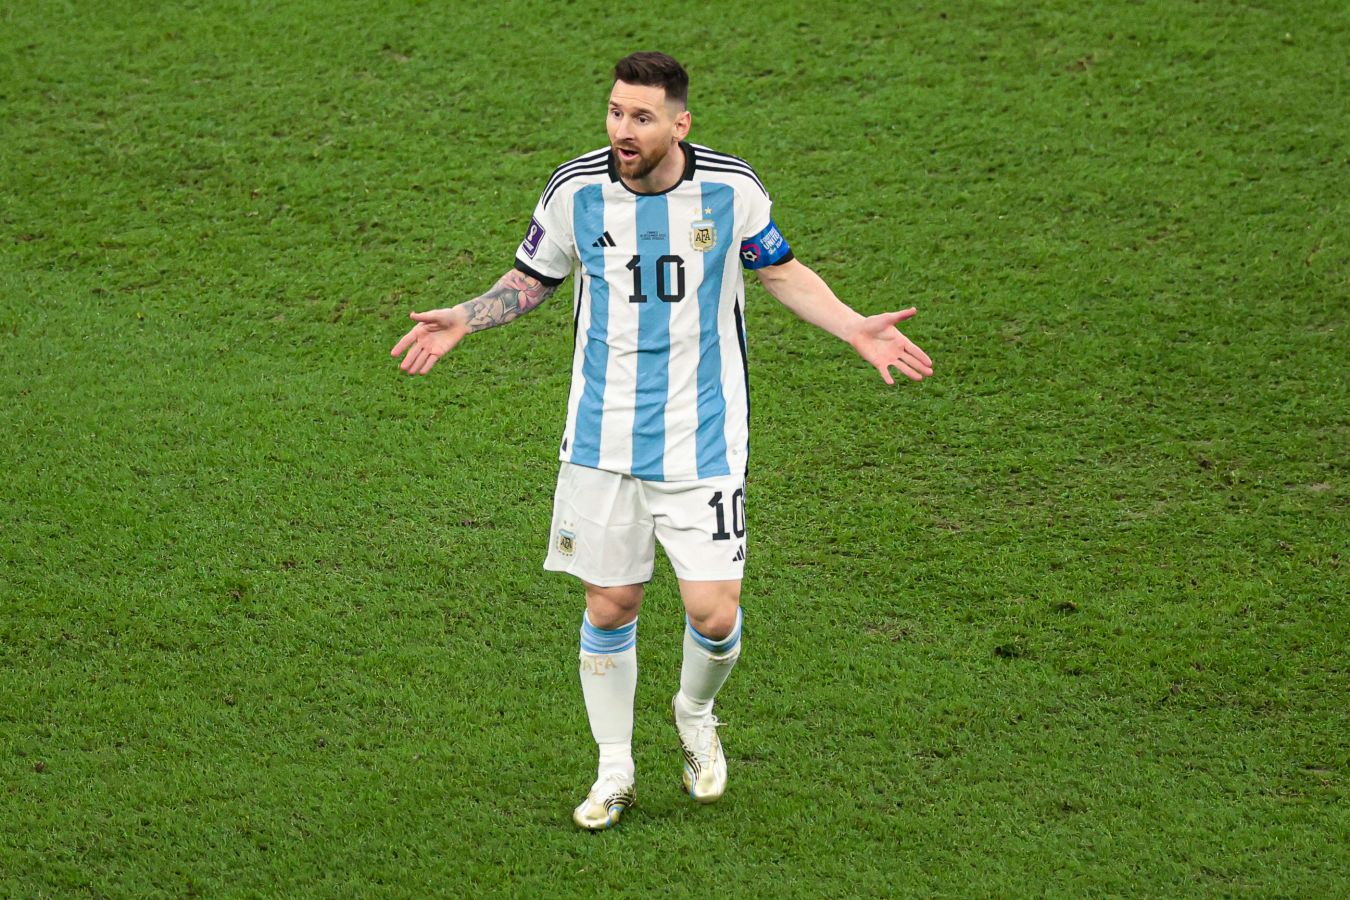 Матч Аргентины отменён из-за скандала с Месси, новый рекорд Капризова. Главное к утру